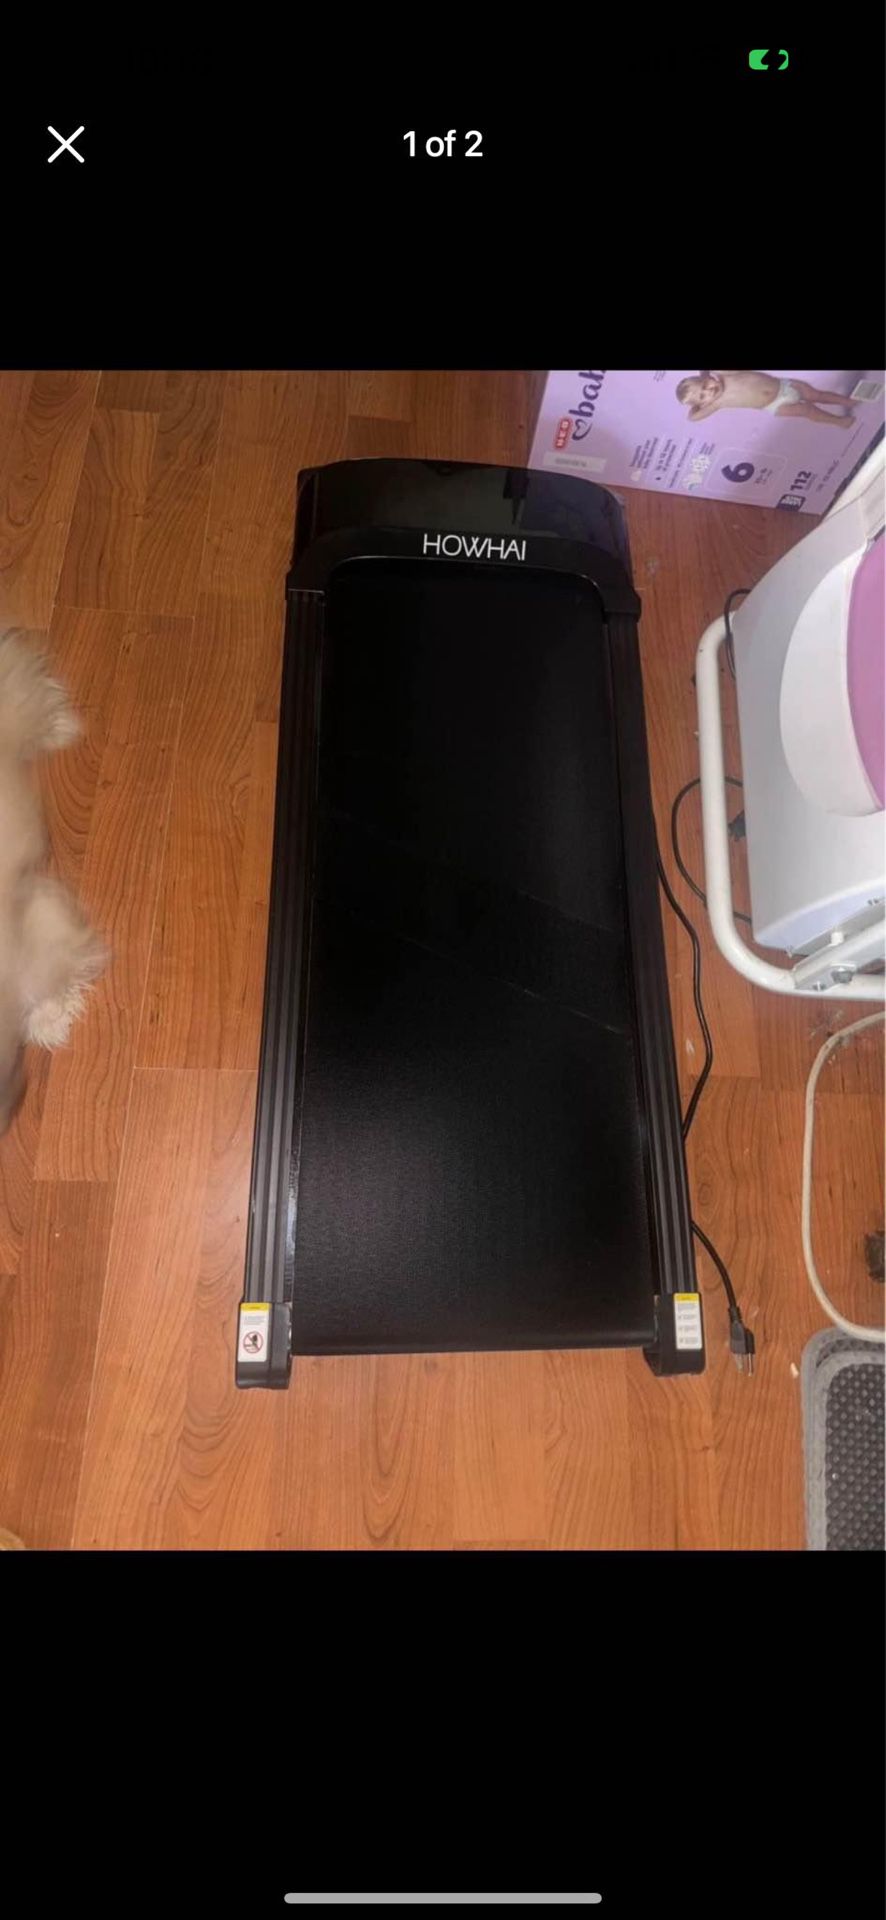 Mini Treadmill 